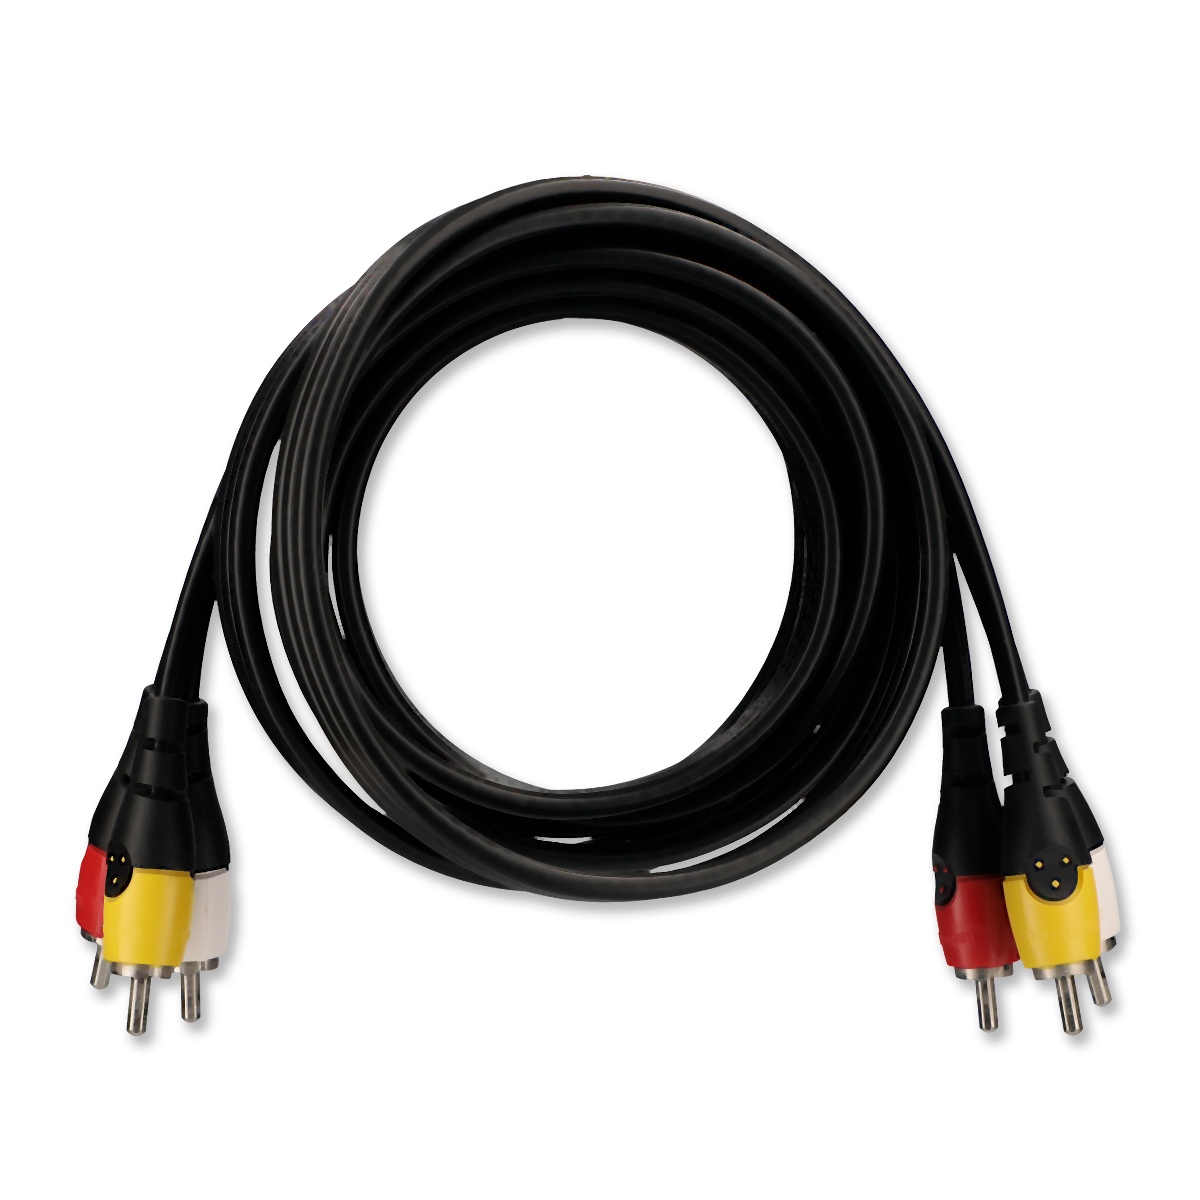 Cable Auxiliar 3.5 mm a Doble RCA RadioShack / 1.8 m / Plástico / Negro, Cables y Adaptadores de Video, TV y Video, Originales RadioShack, Todas, Categoría